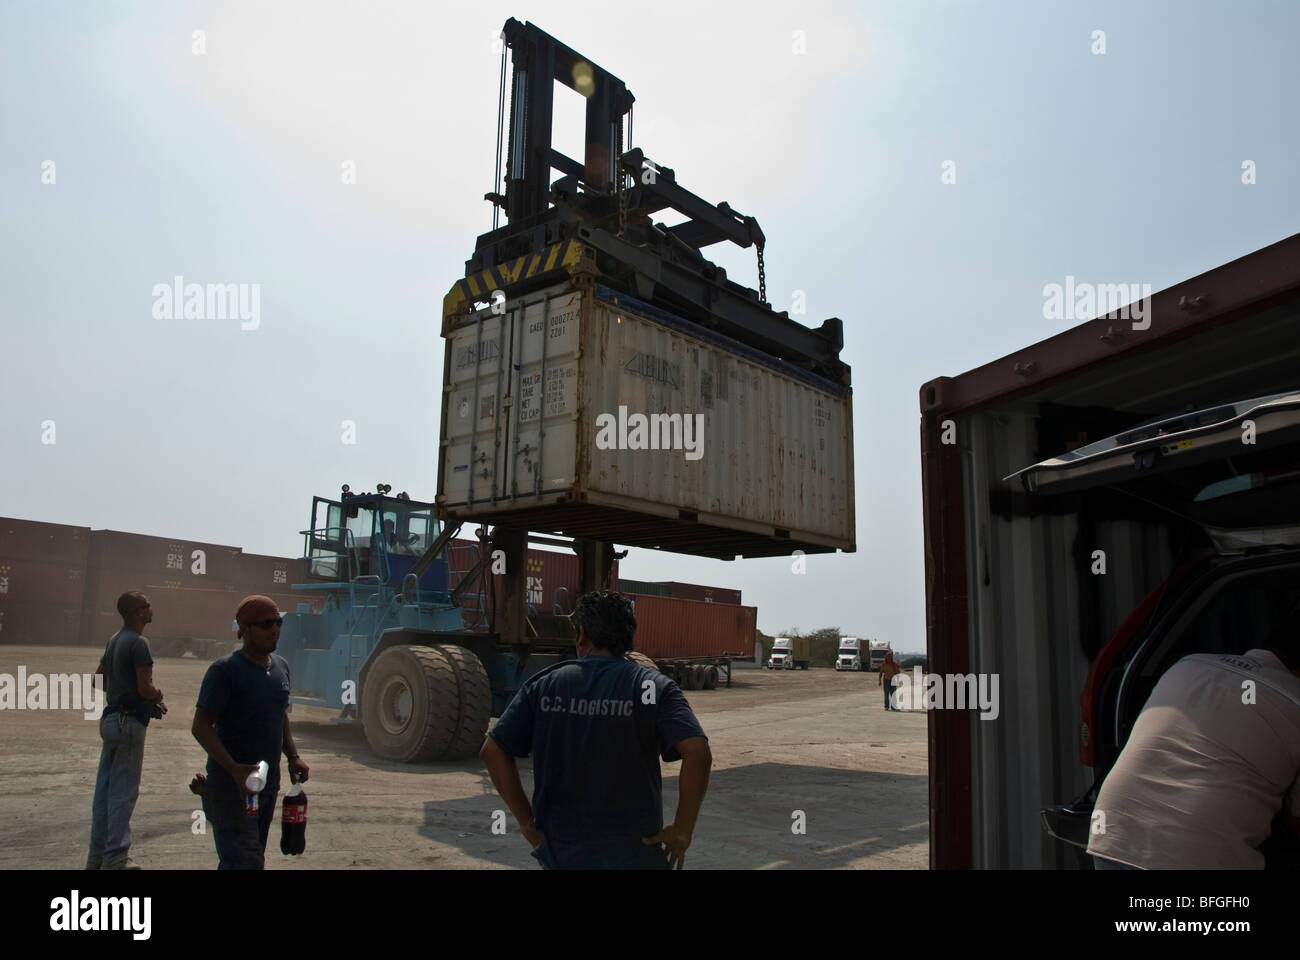 a crane lifting a cargo container Stock Photo